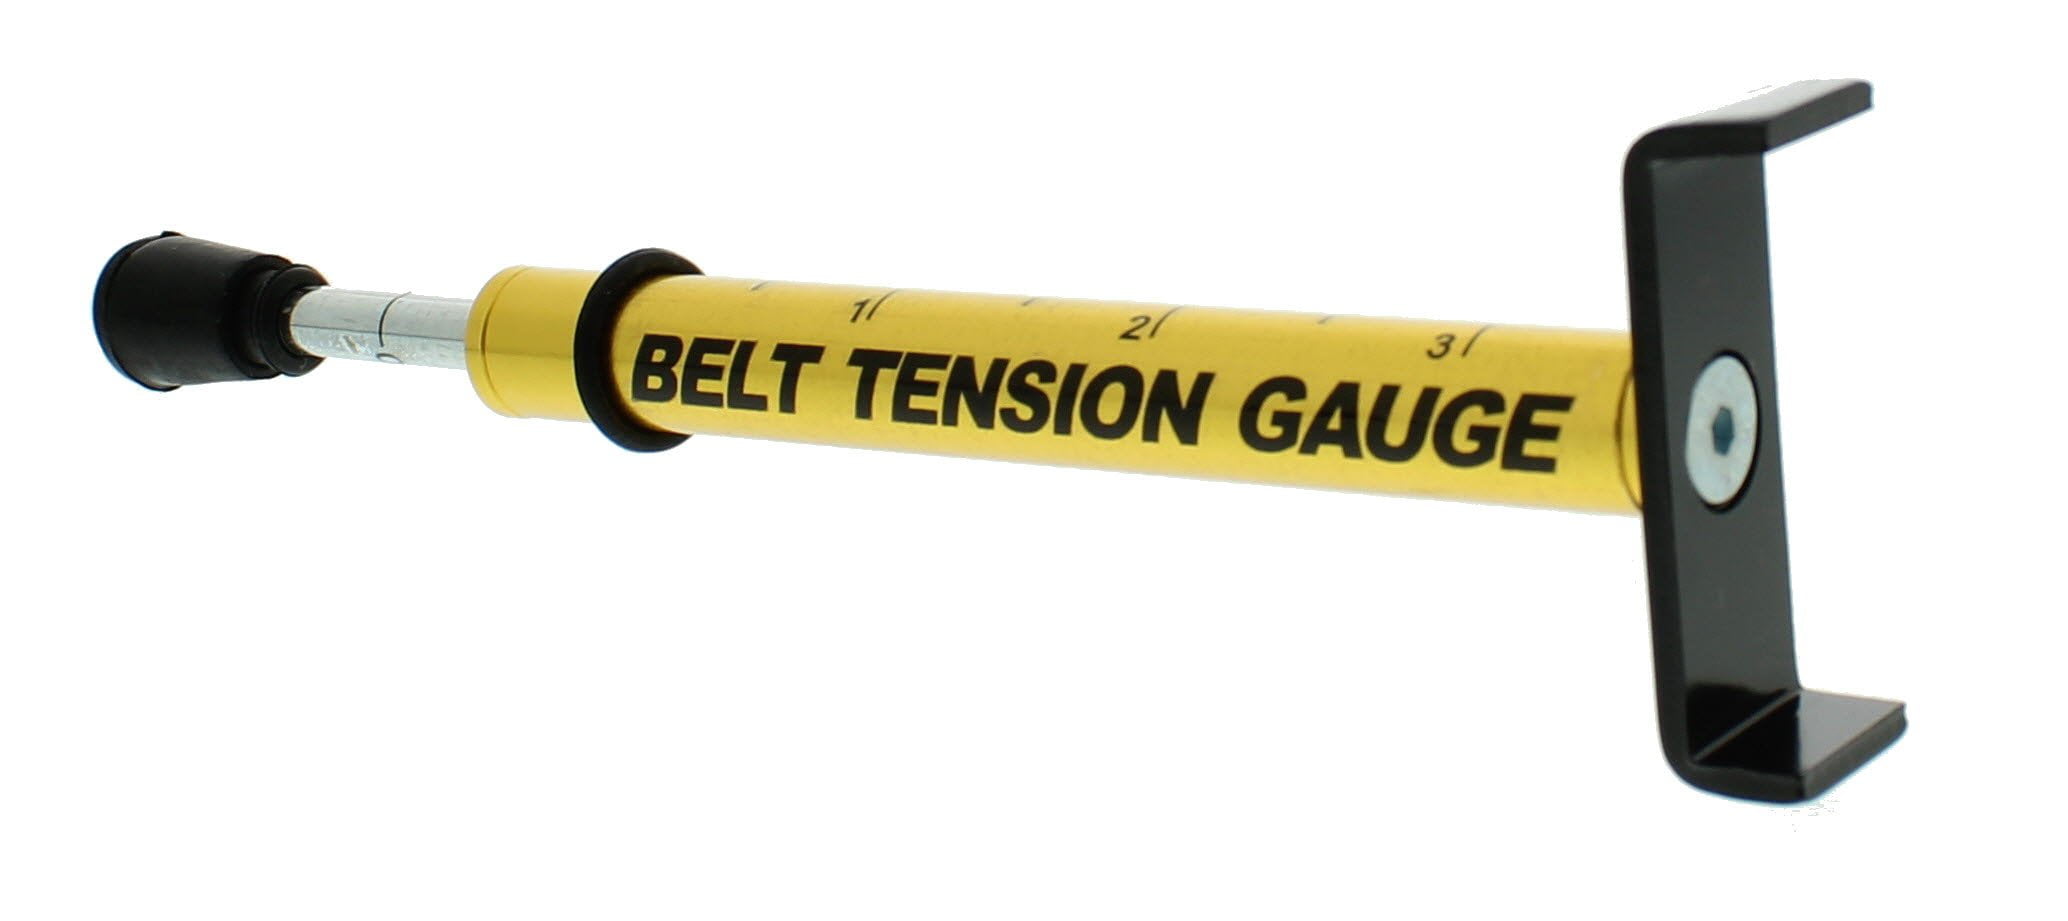 v-belt tension checker